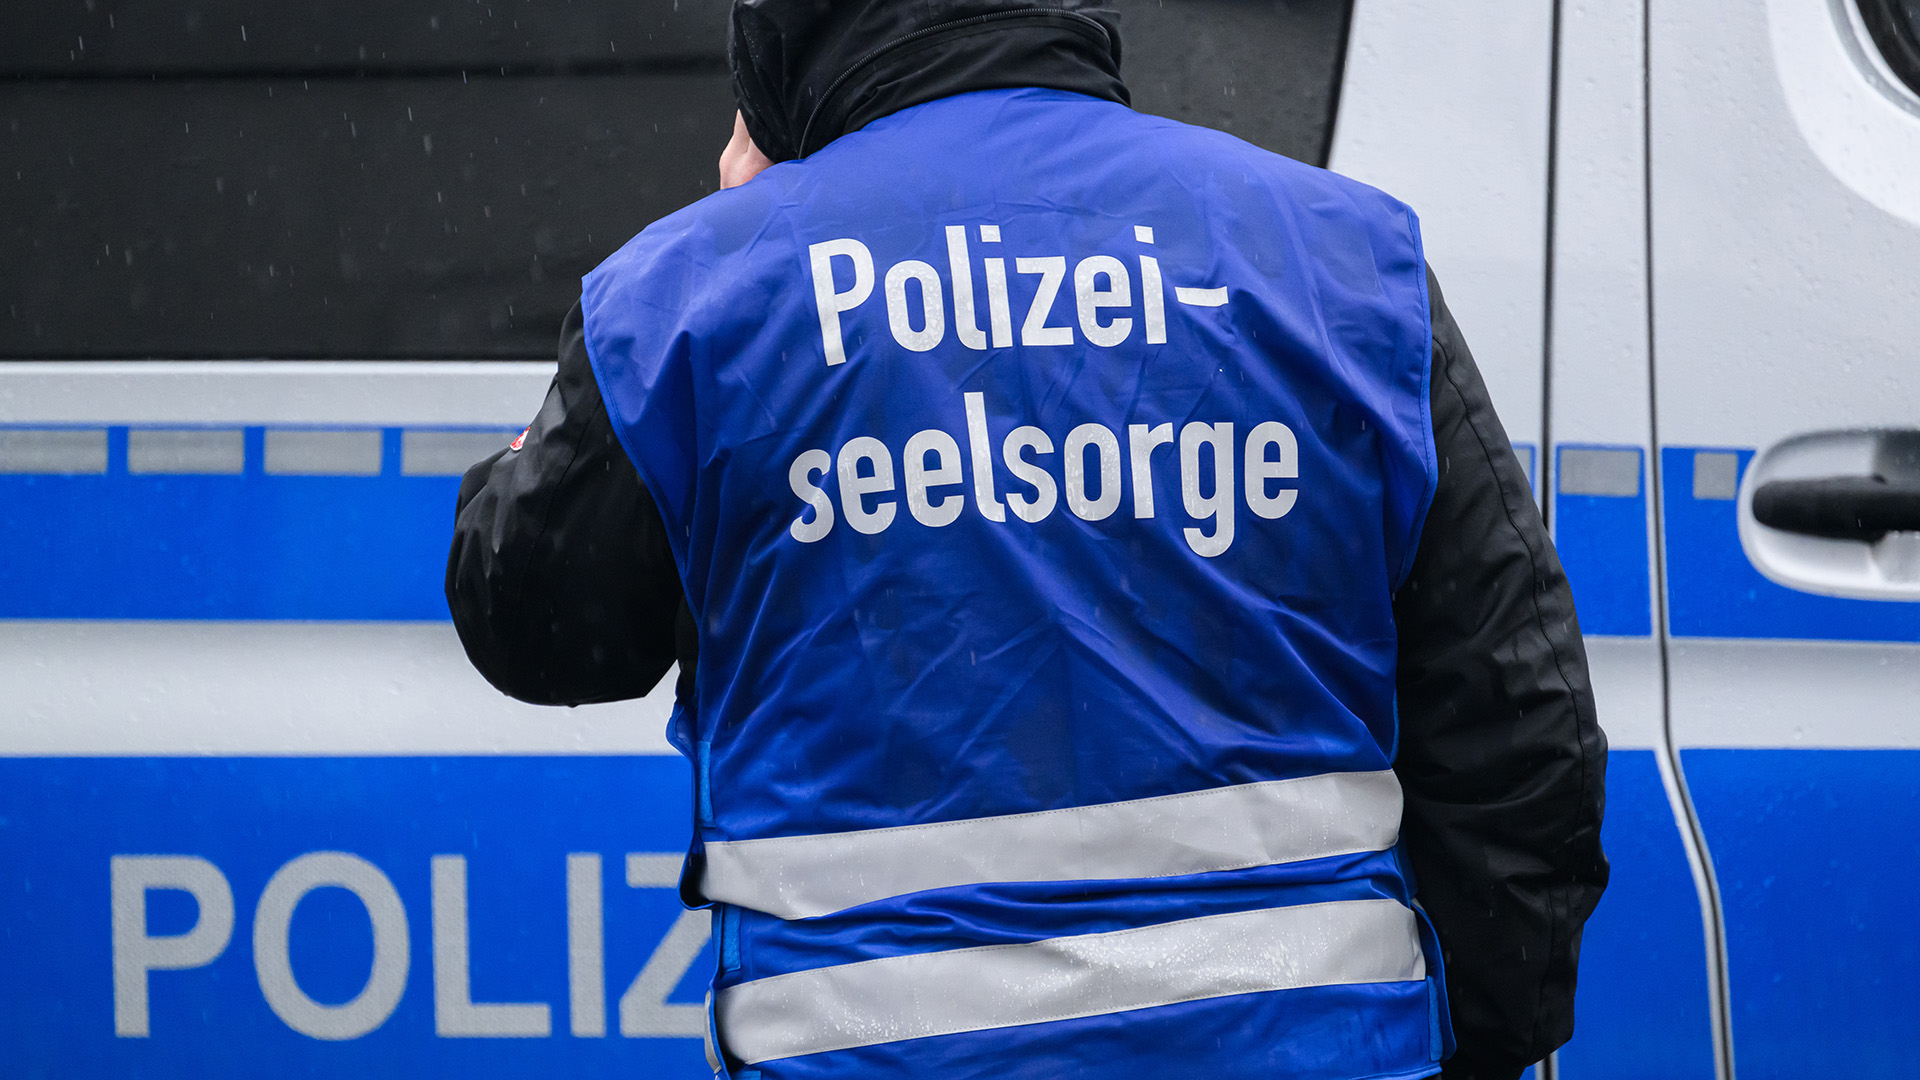 Symbolbild: Polizeiseelsorge steht auf einer Weste, die ein Polizist am 11.02.2024 in Dresden trägt. (Quelle: dpa/Robert Michael)